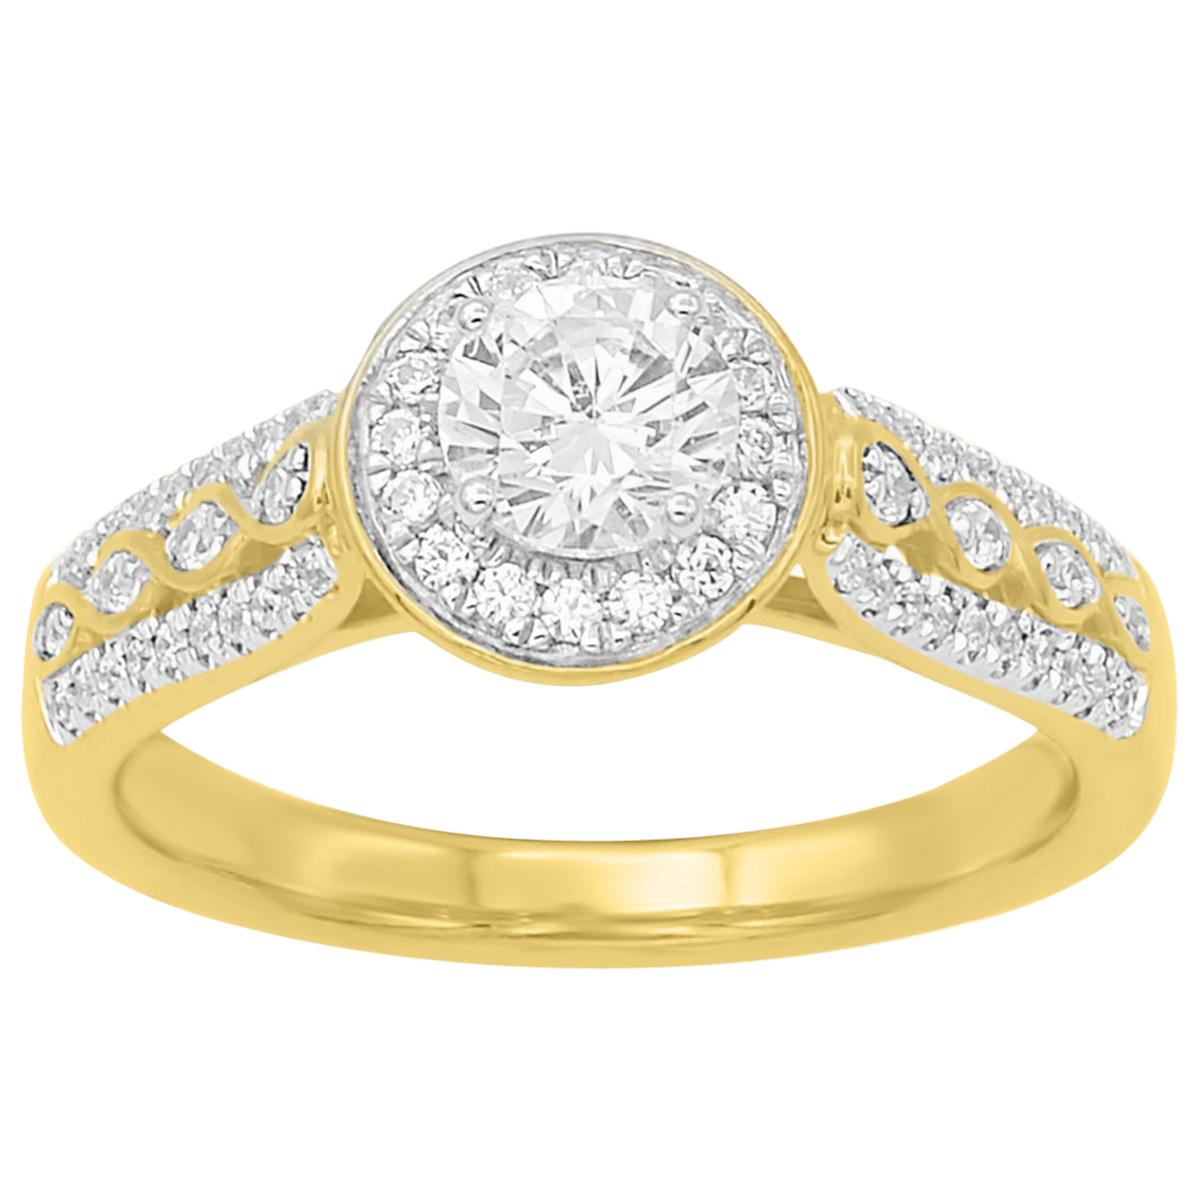 TJD 0.75 Carat Round Diamond 18 Karat Yellow Gold Engagement Wedding Ring